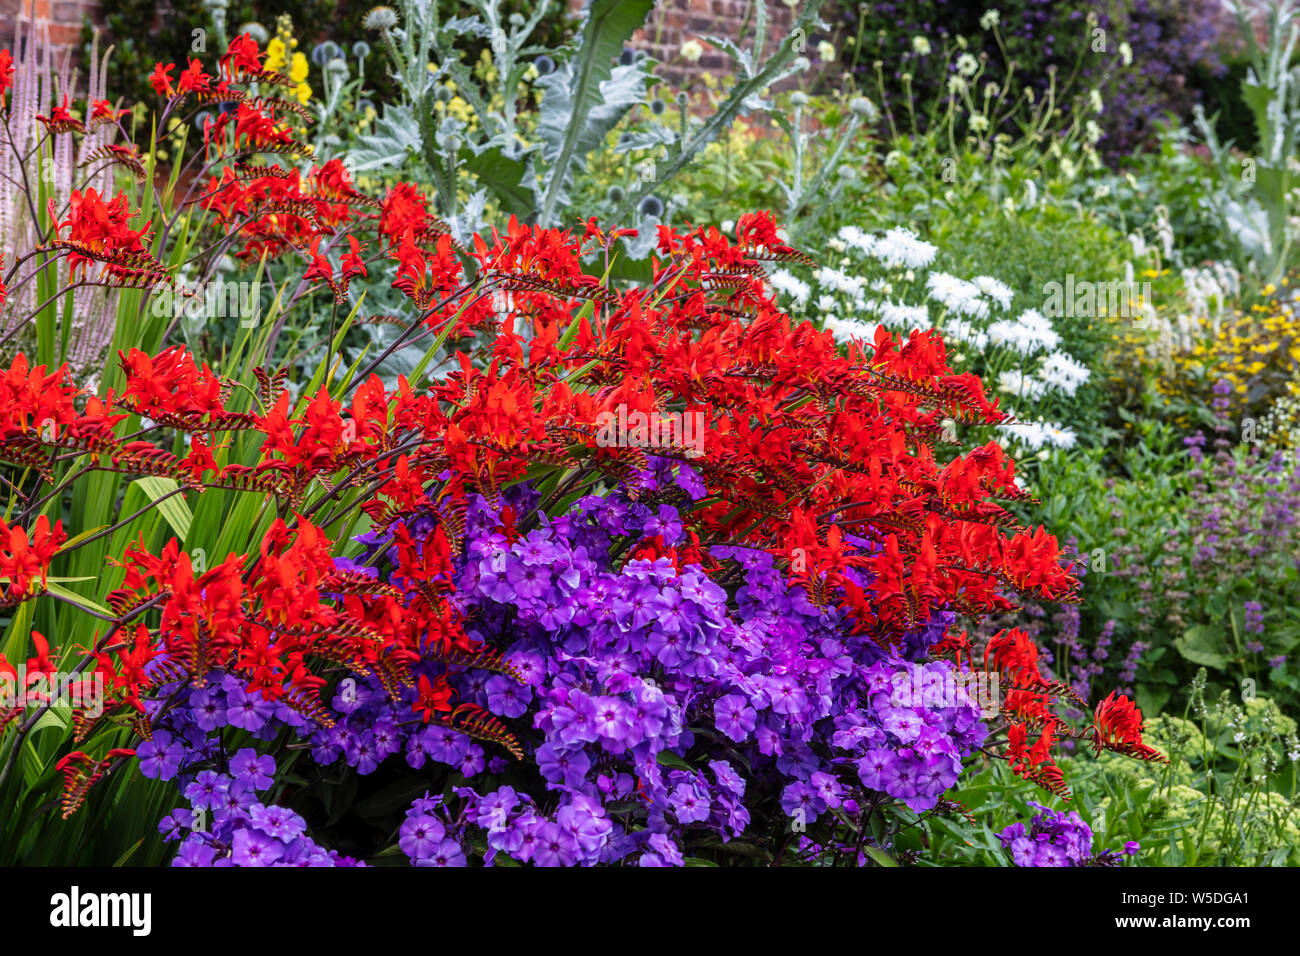 Tief rot Crocosmia und lila Phlox blühende Pflanzen in einem Garten Staudenbeet. Stockfoto